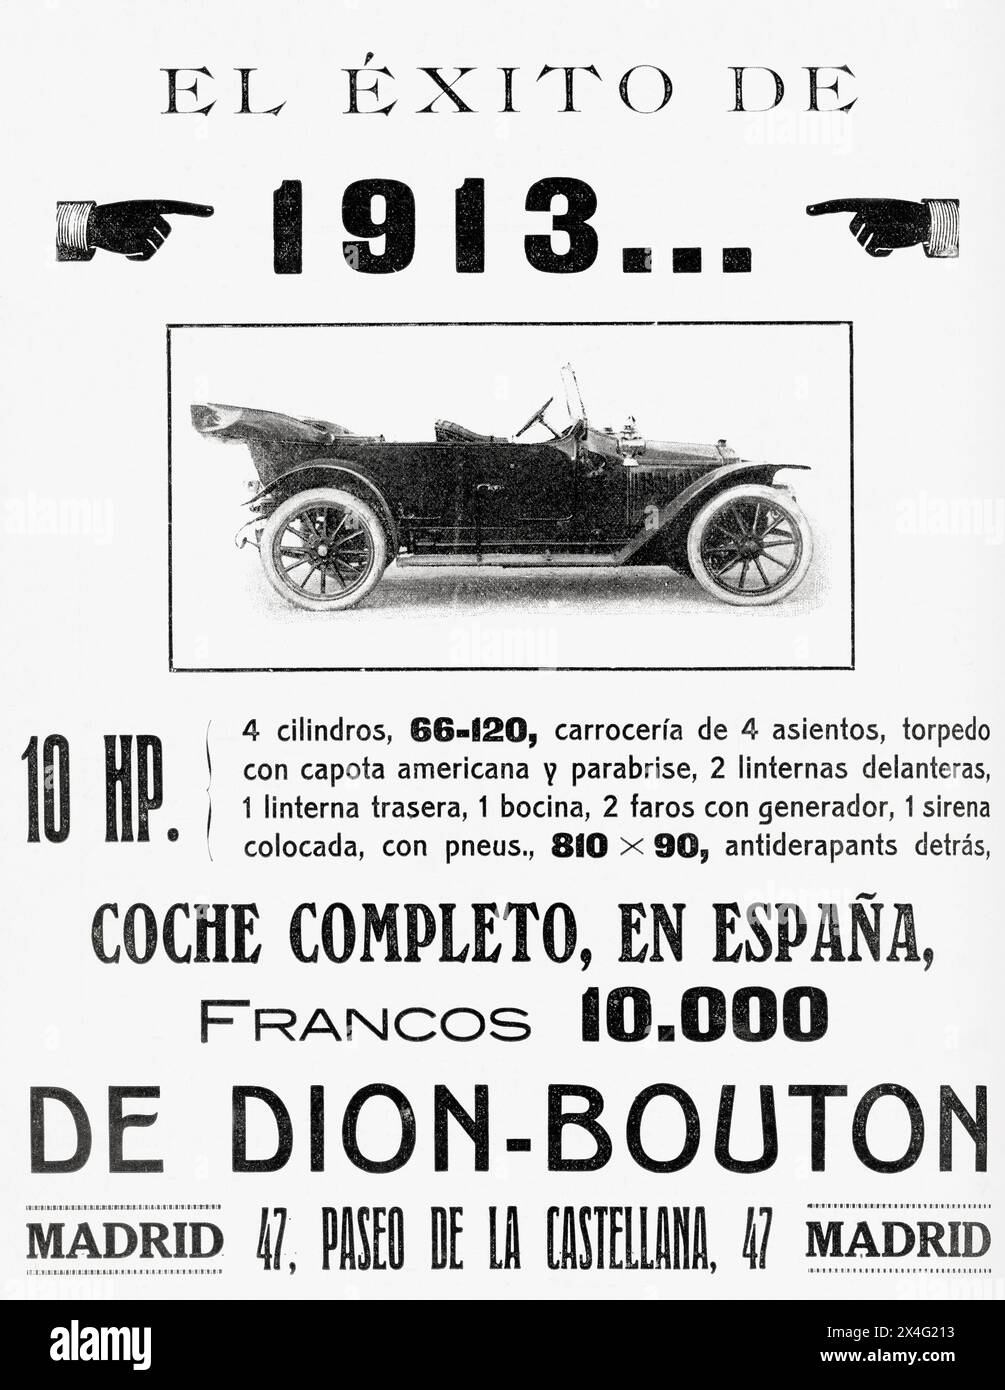 Pubblicità spagnola per un'auto De Dion-Bouton. Da Mundo grafico, pubblicato nel 1912. Foto Stock